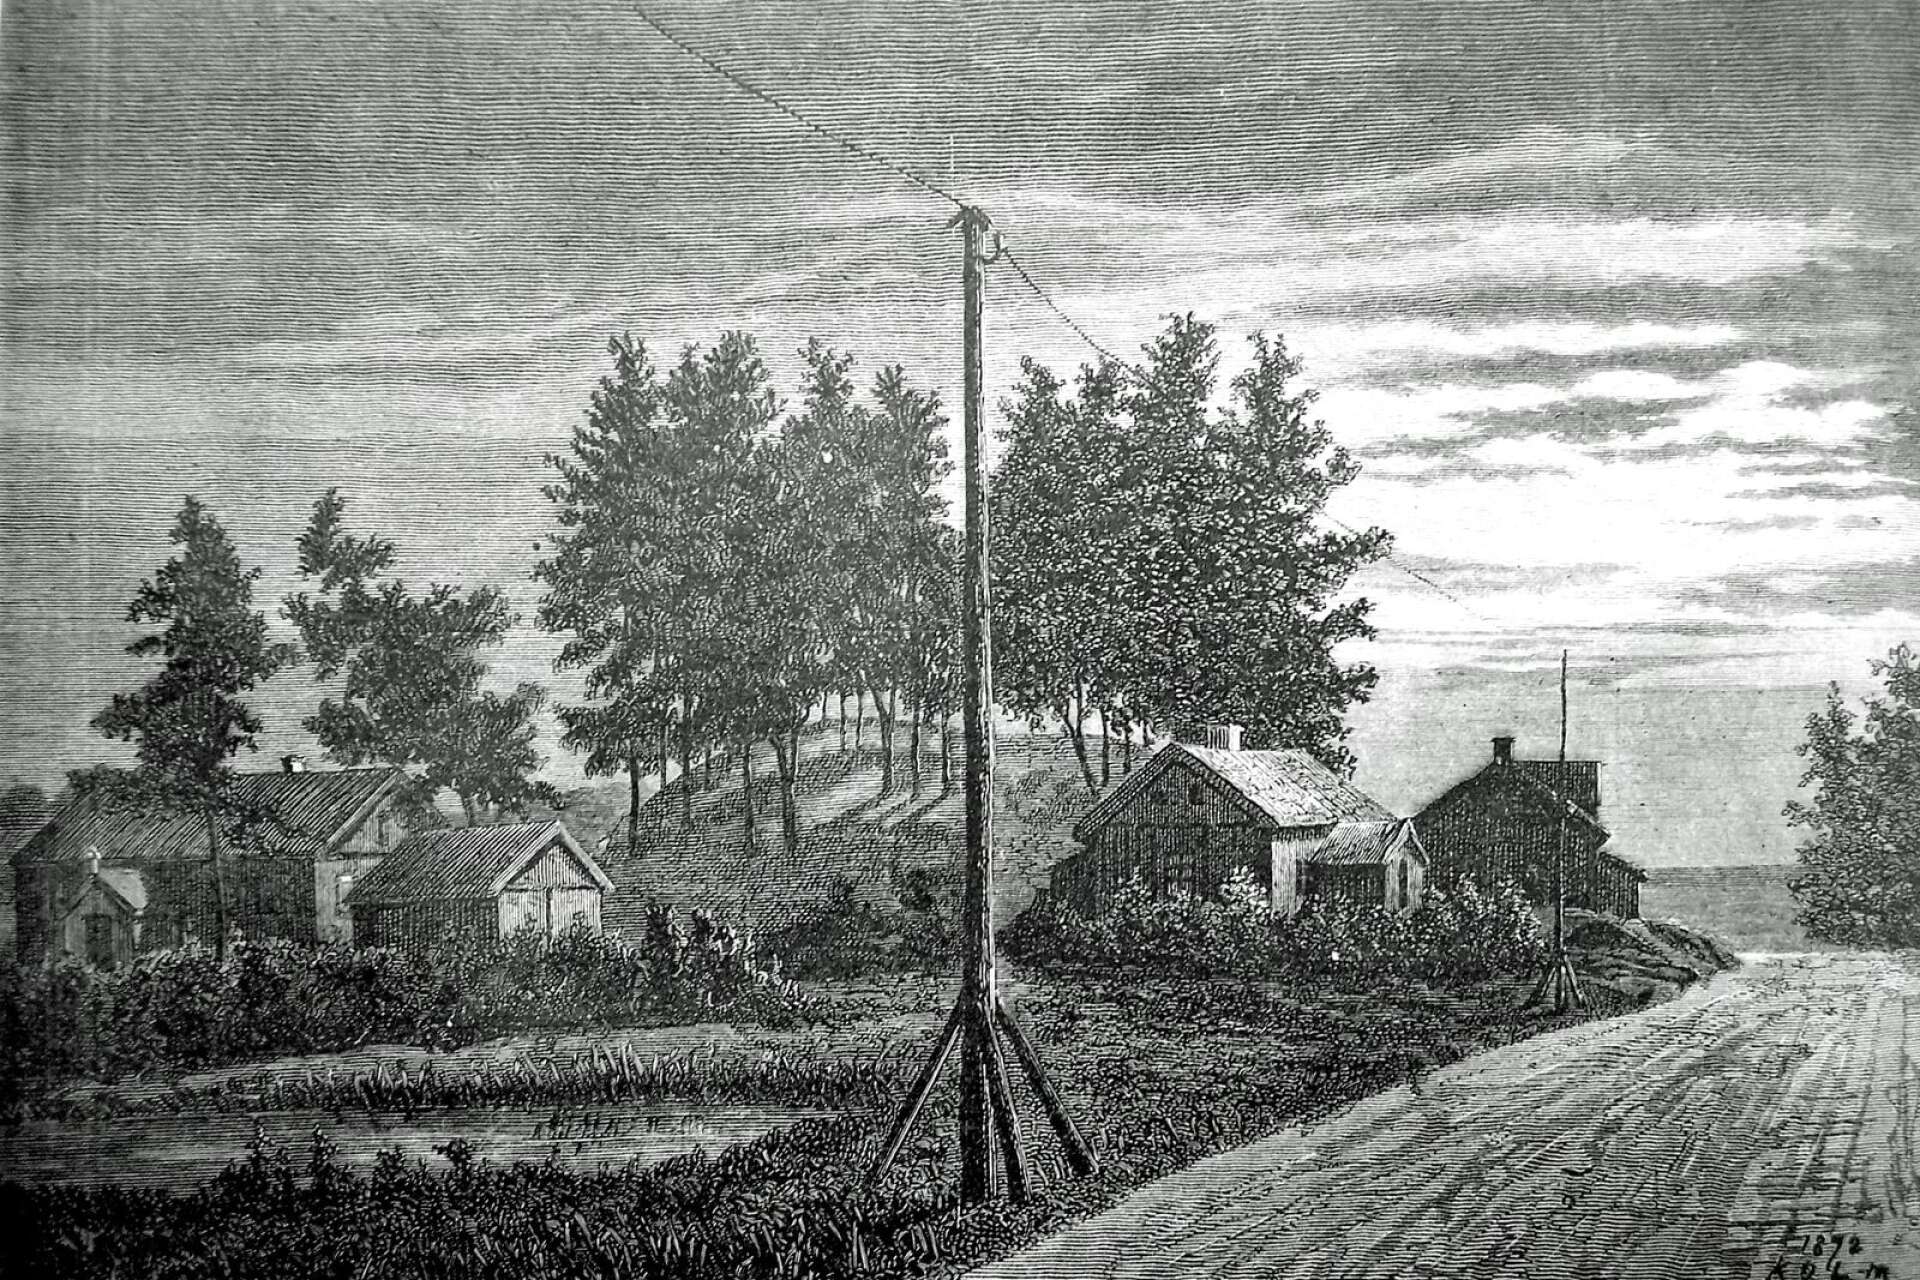 Denna bild publicerades en gång i Ny Illustrerad Tidning. I ena hörnet läser man dels 1872, dels K O L-m. Det står för Karl Oskar Lindblom, som under uppväxten bodde i Säffle, för övrigt i det gamla skolhuset som ses till vänster i bilden. Det skulle dröja 43 år innan vattentornet stod färdigt på kullen.